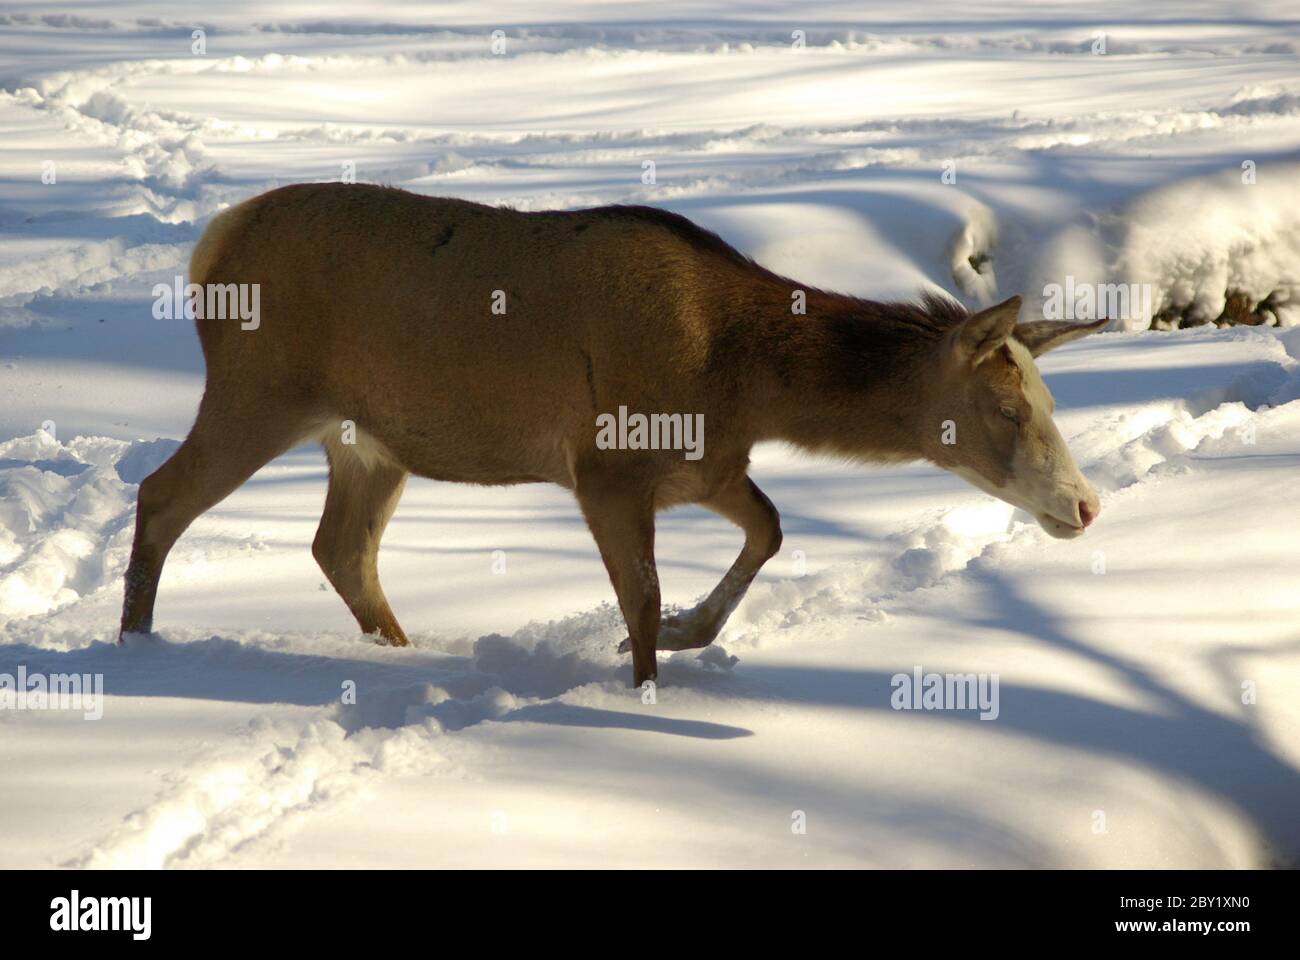 Red deer / subspecies Blesswild Stock Photo